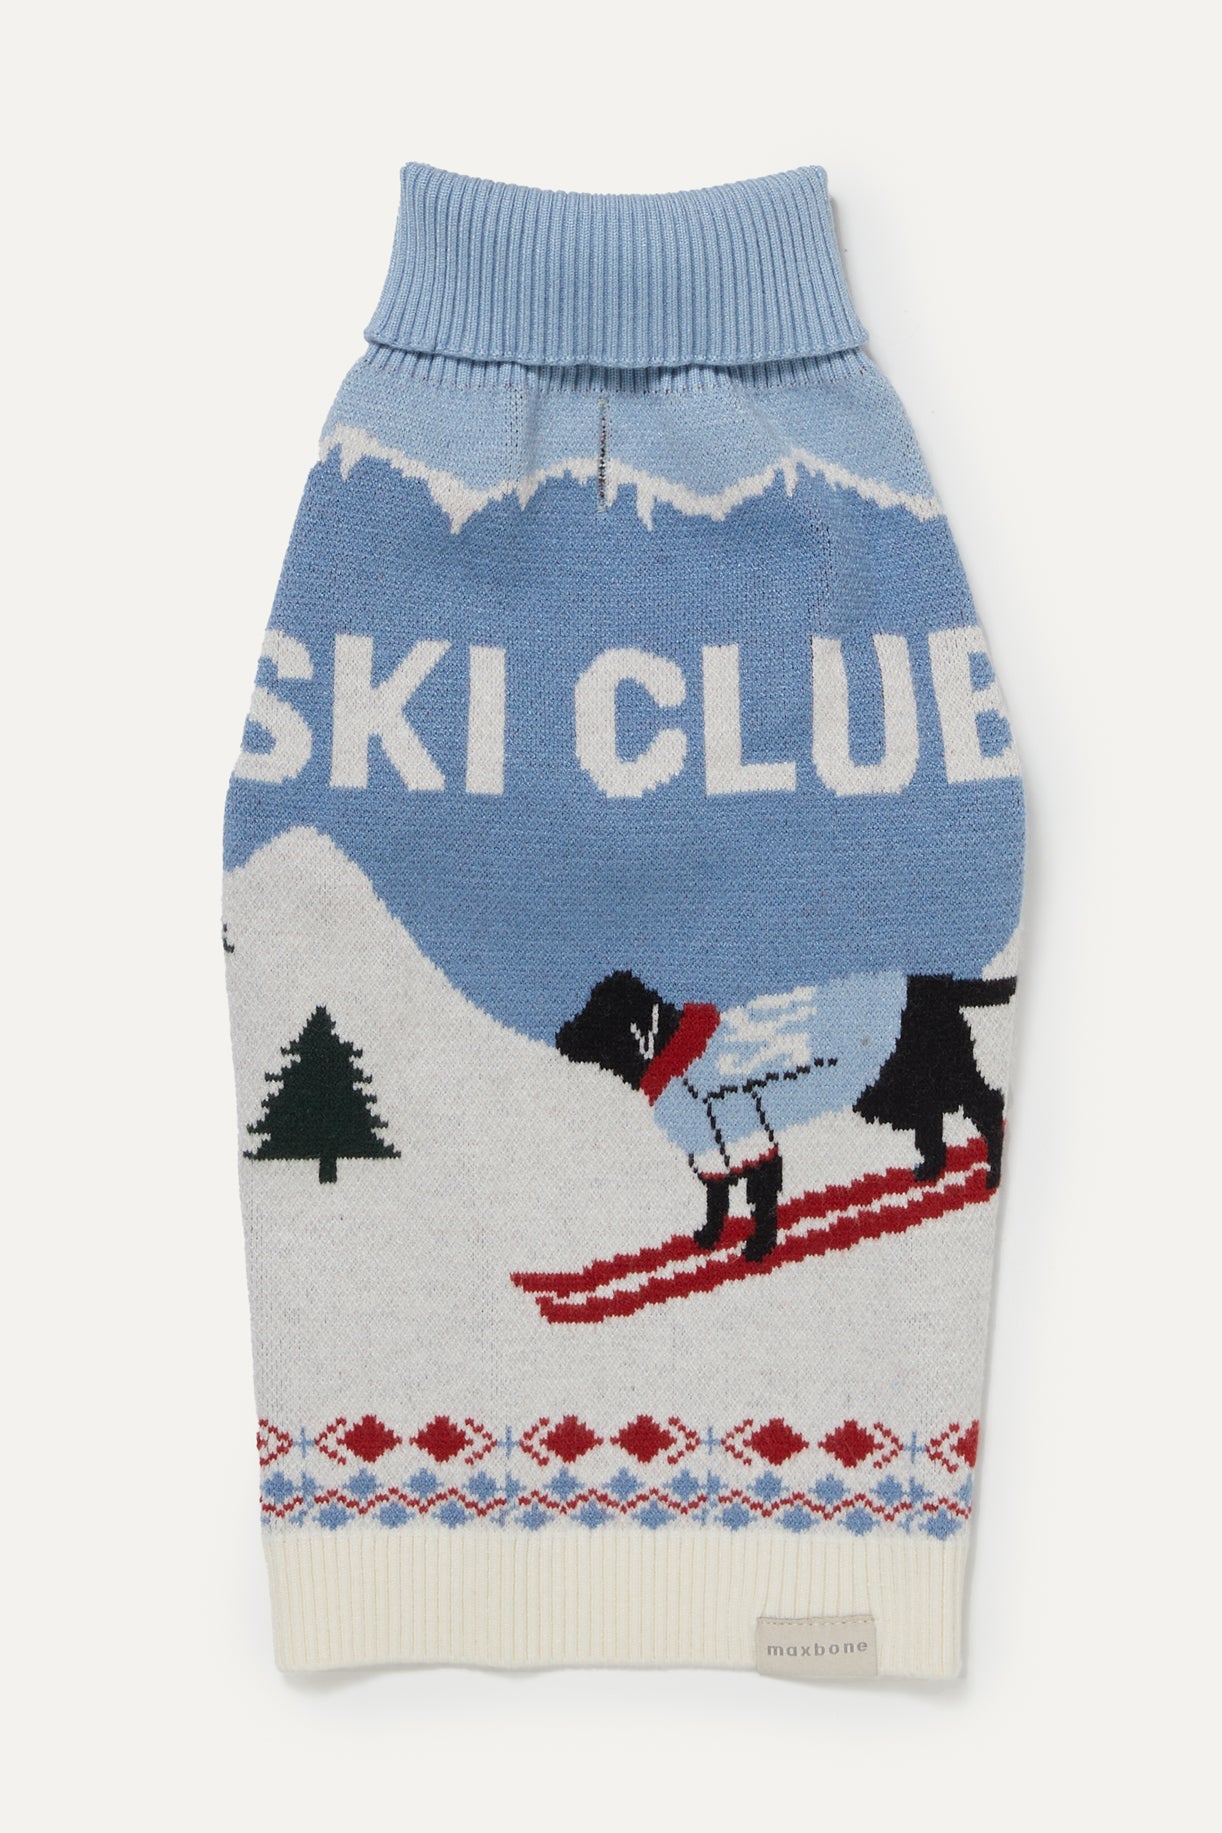 Ski Club Jumper - maxbone